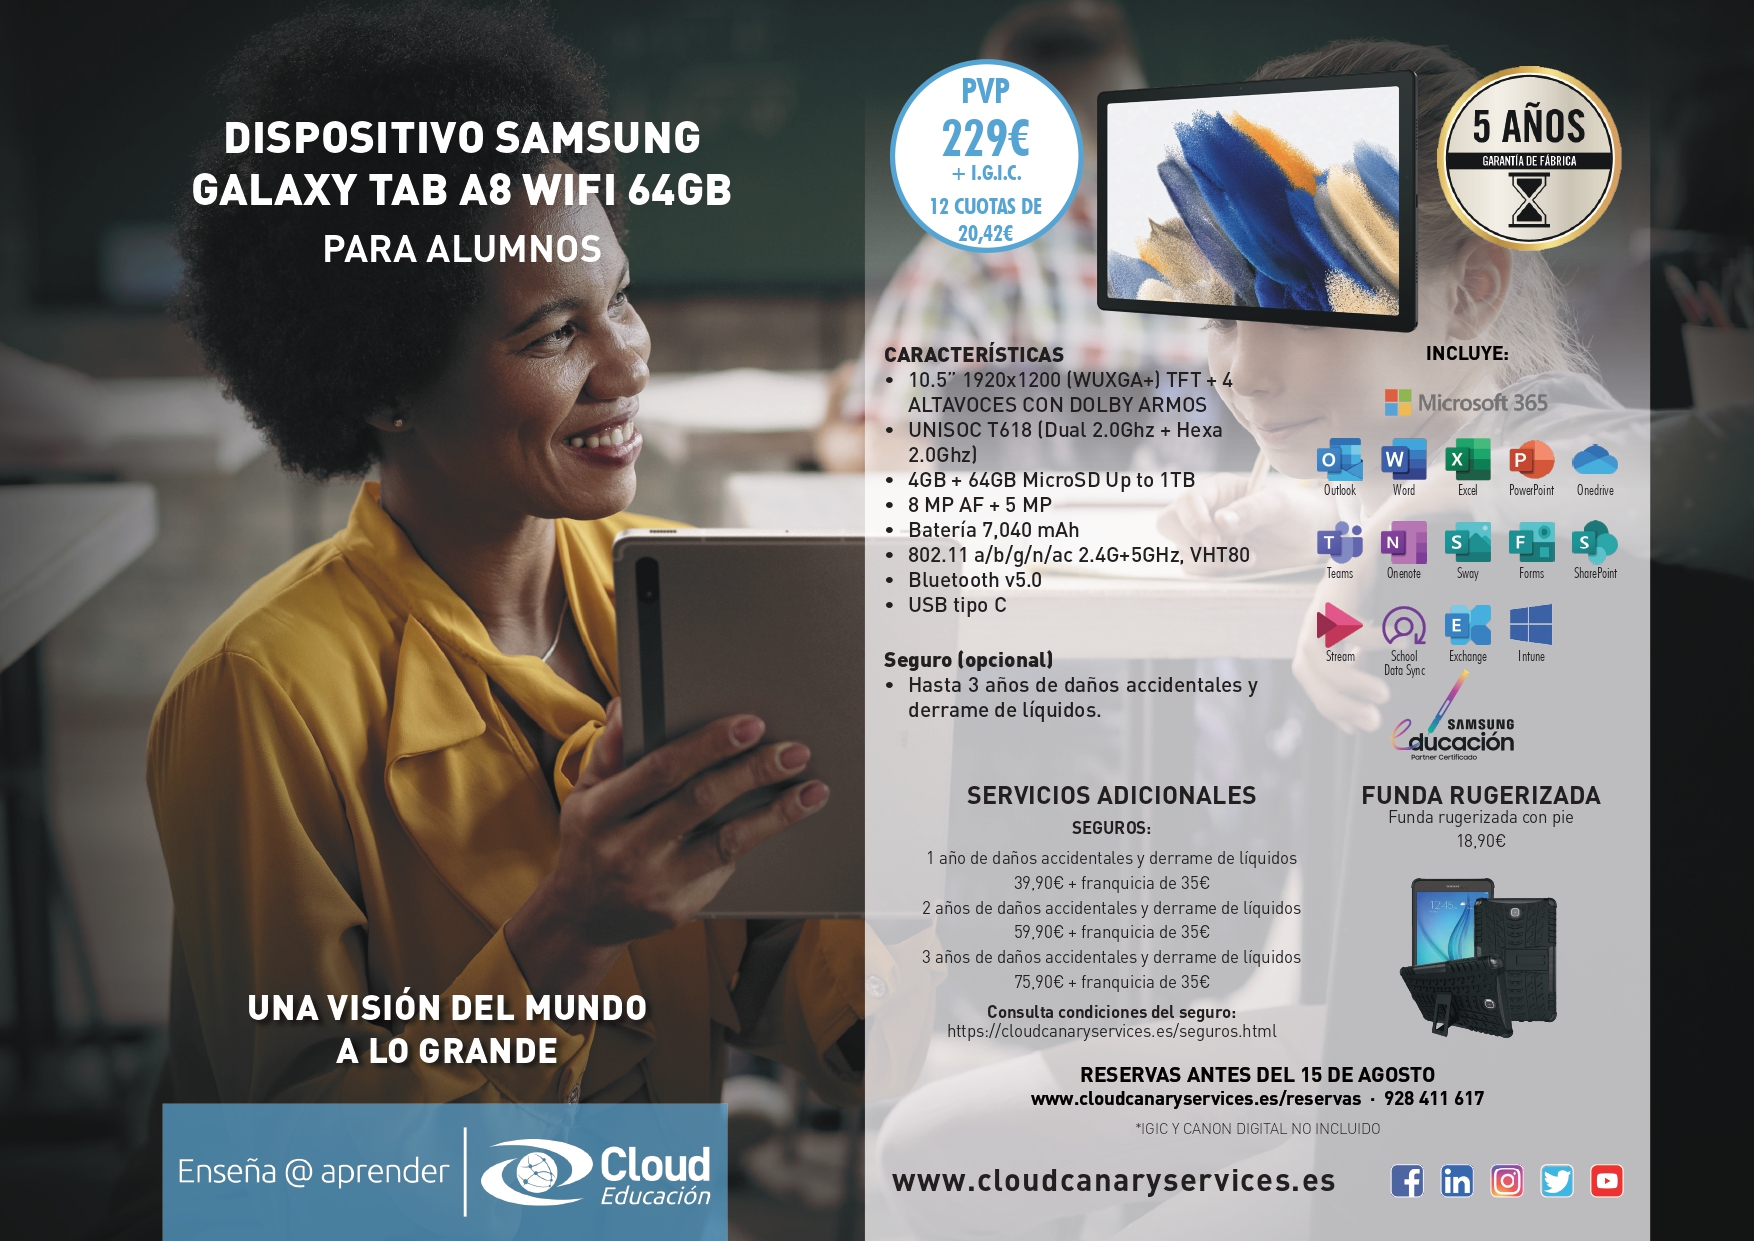 Samsung Galaxy Tab A8 Wifi 64GB page 0001 1